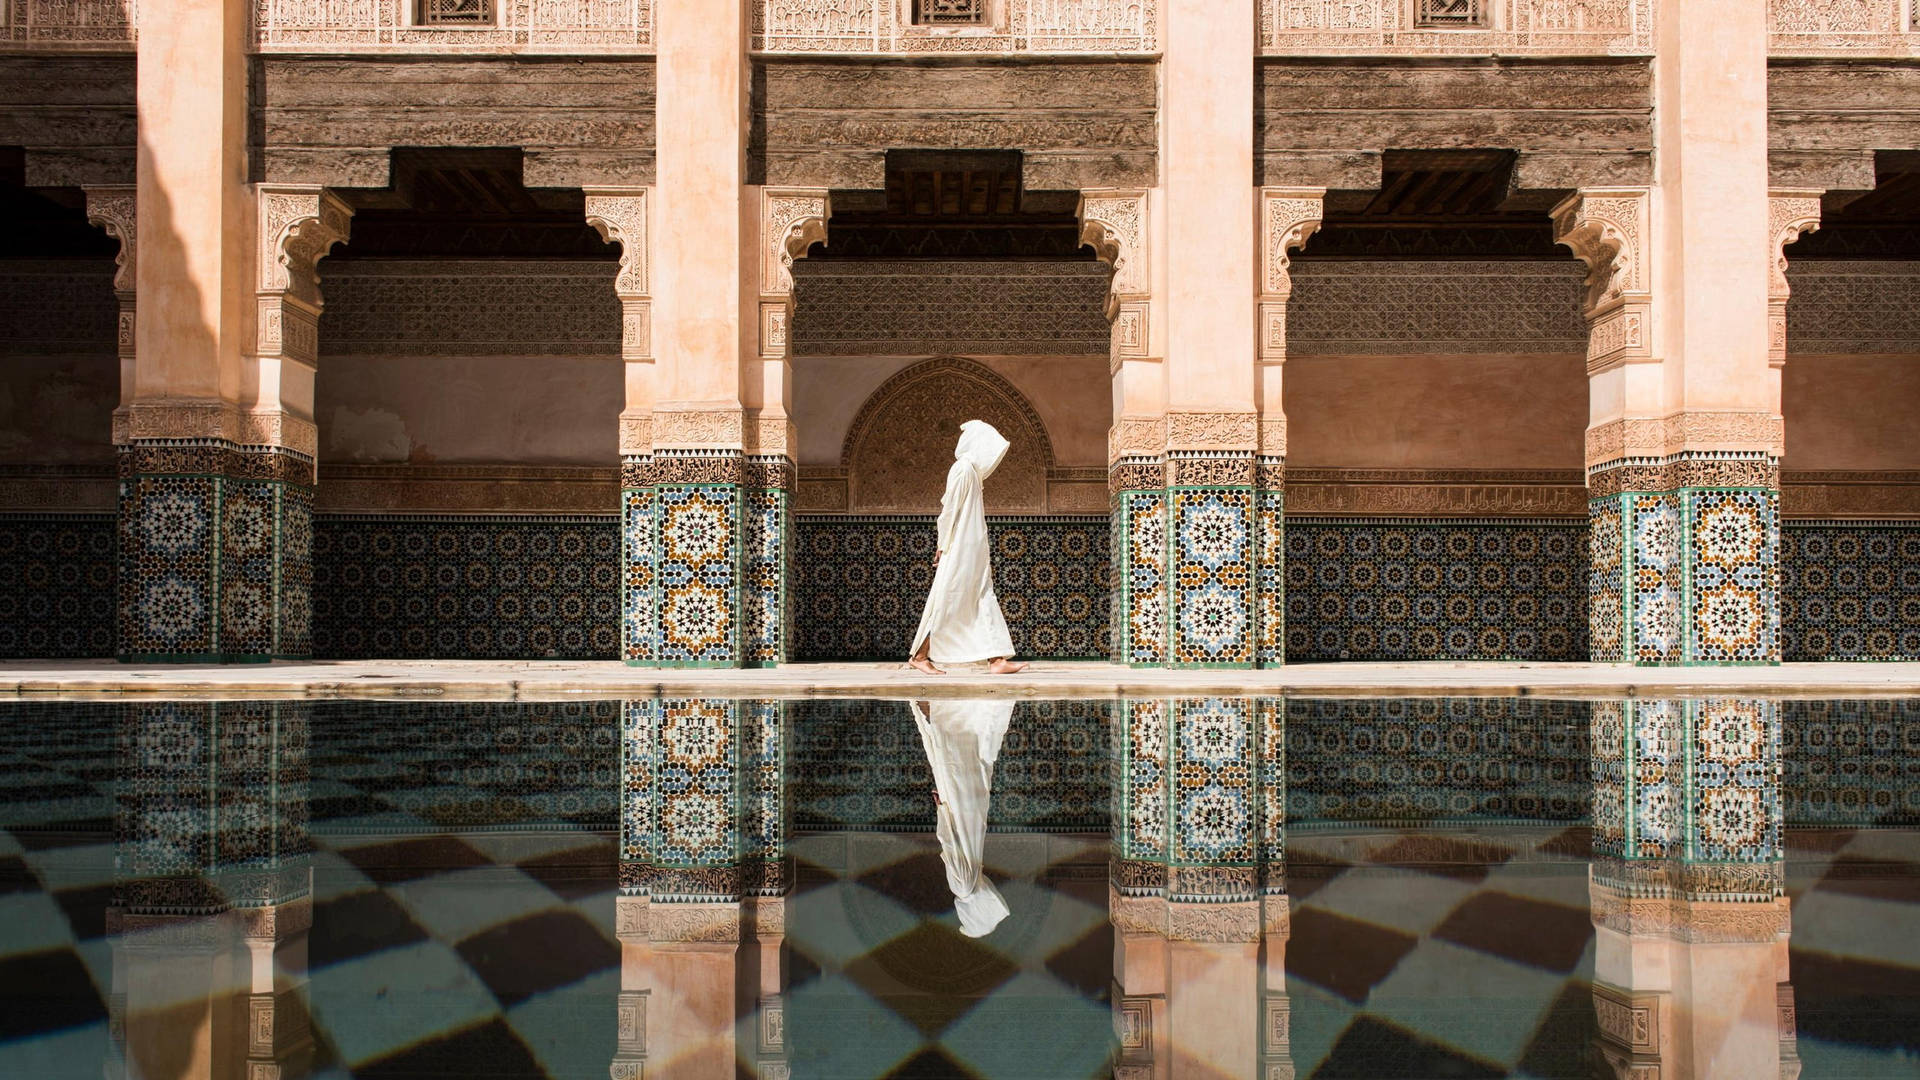 Morocco Background Photos